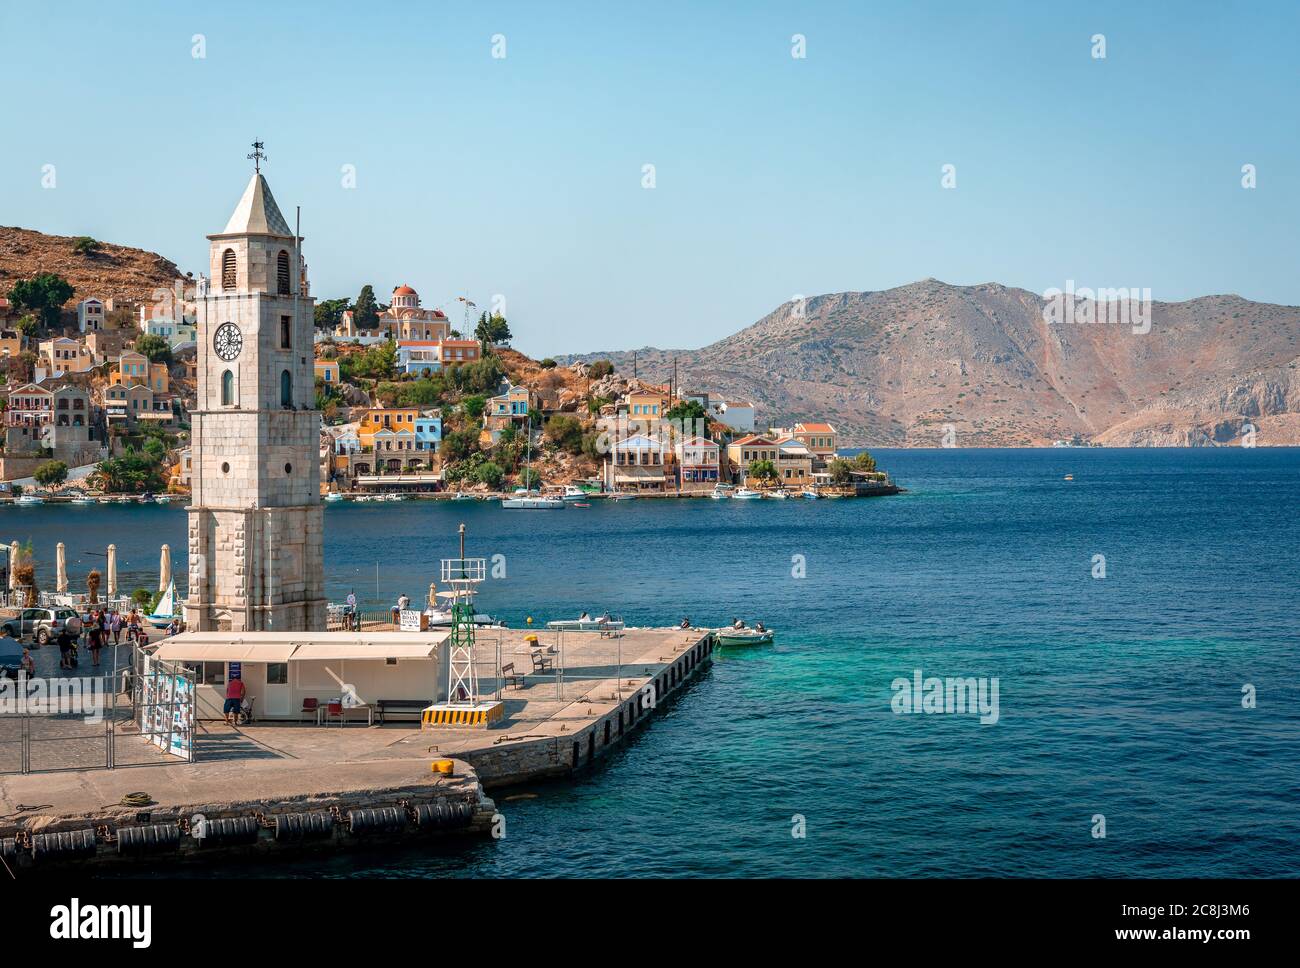 Der Uhrenturm und der Eingang zum Hafen von Symi, einer winzigen Insel der Dodekanes, in Griechenland. Stockfoto